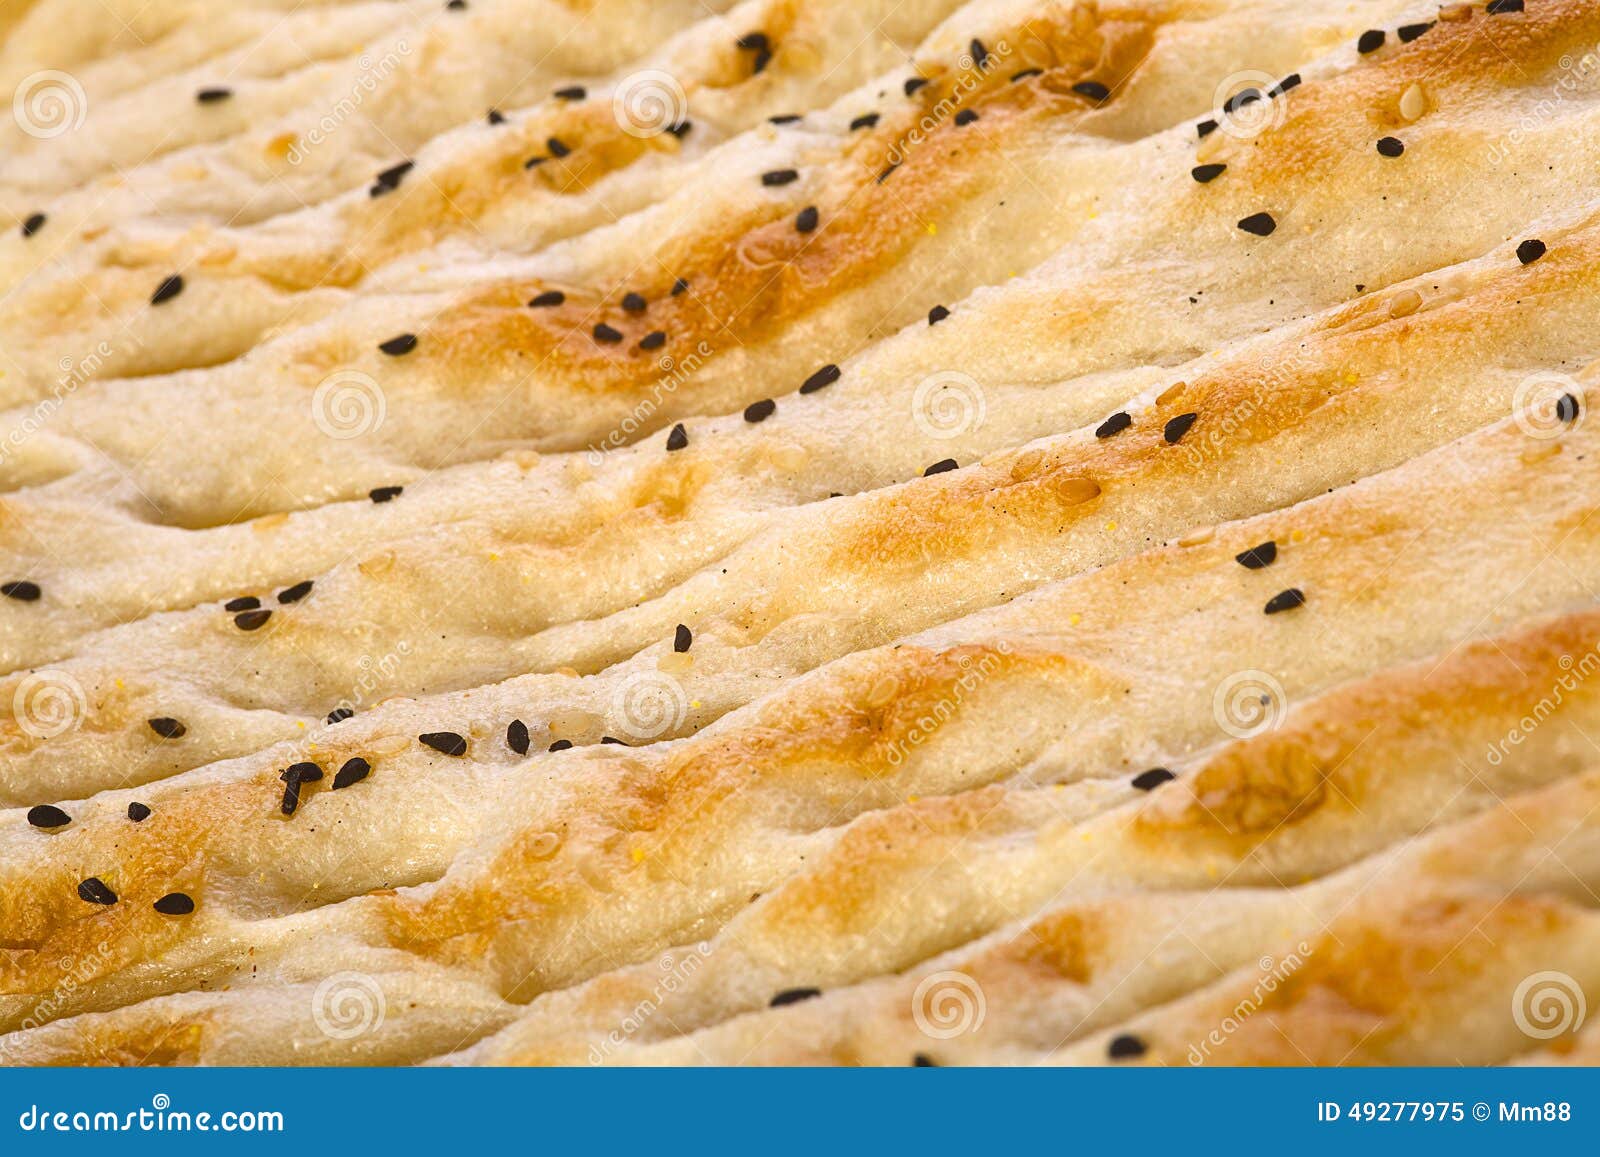 土耳其面包师 一天能做出25种面包-美食视频-搜狐视频